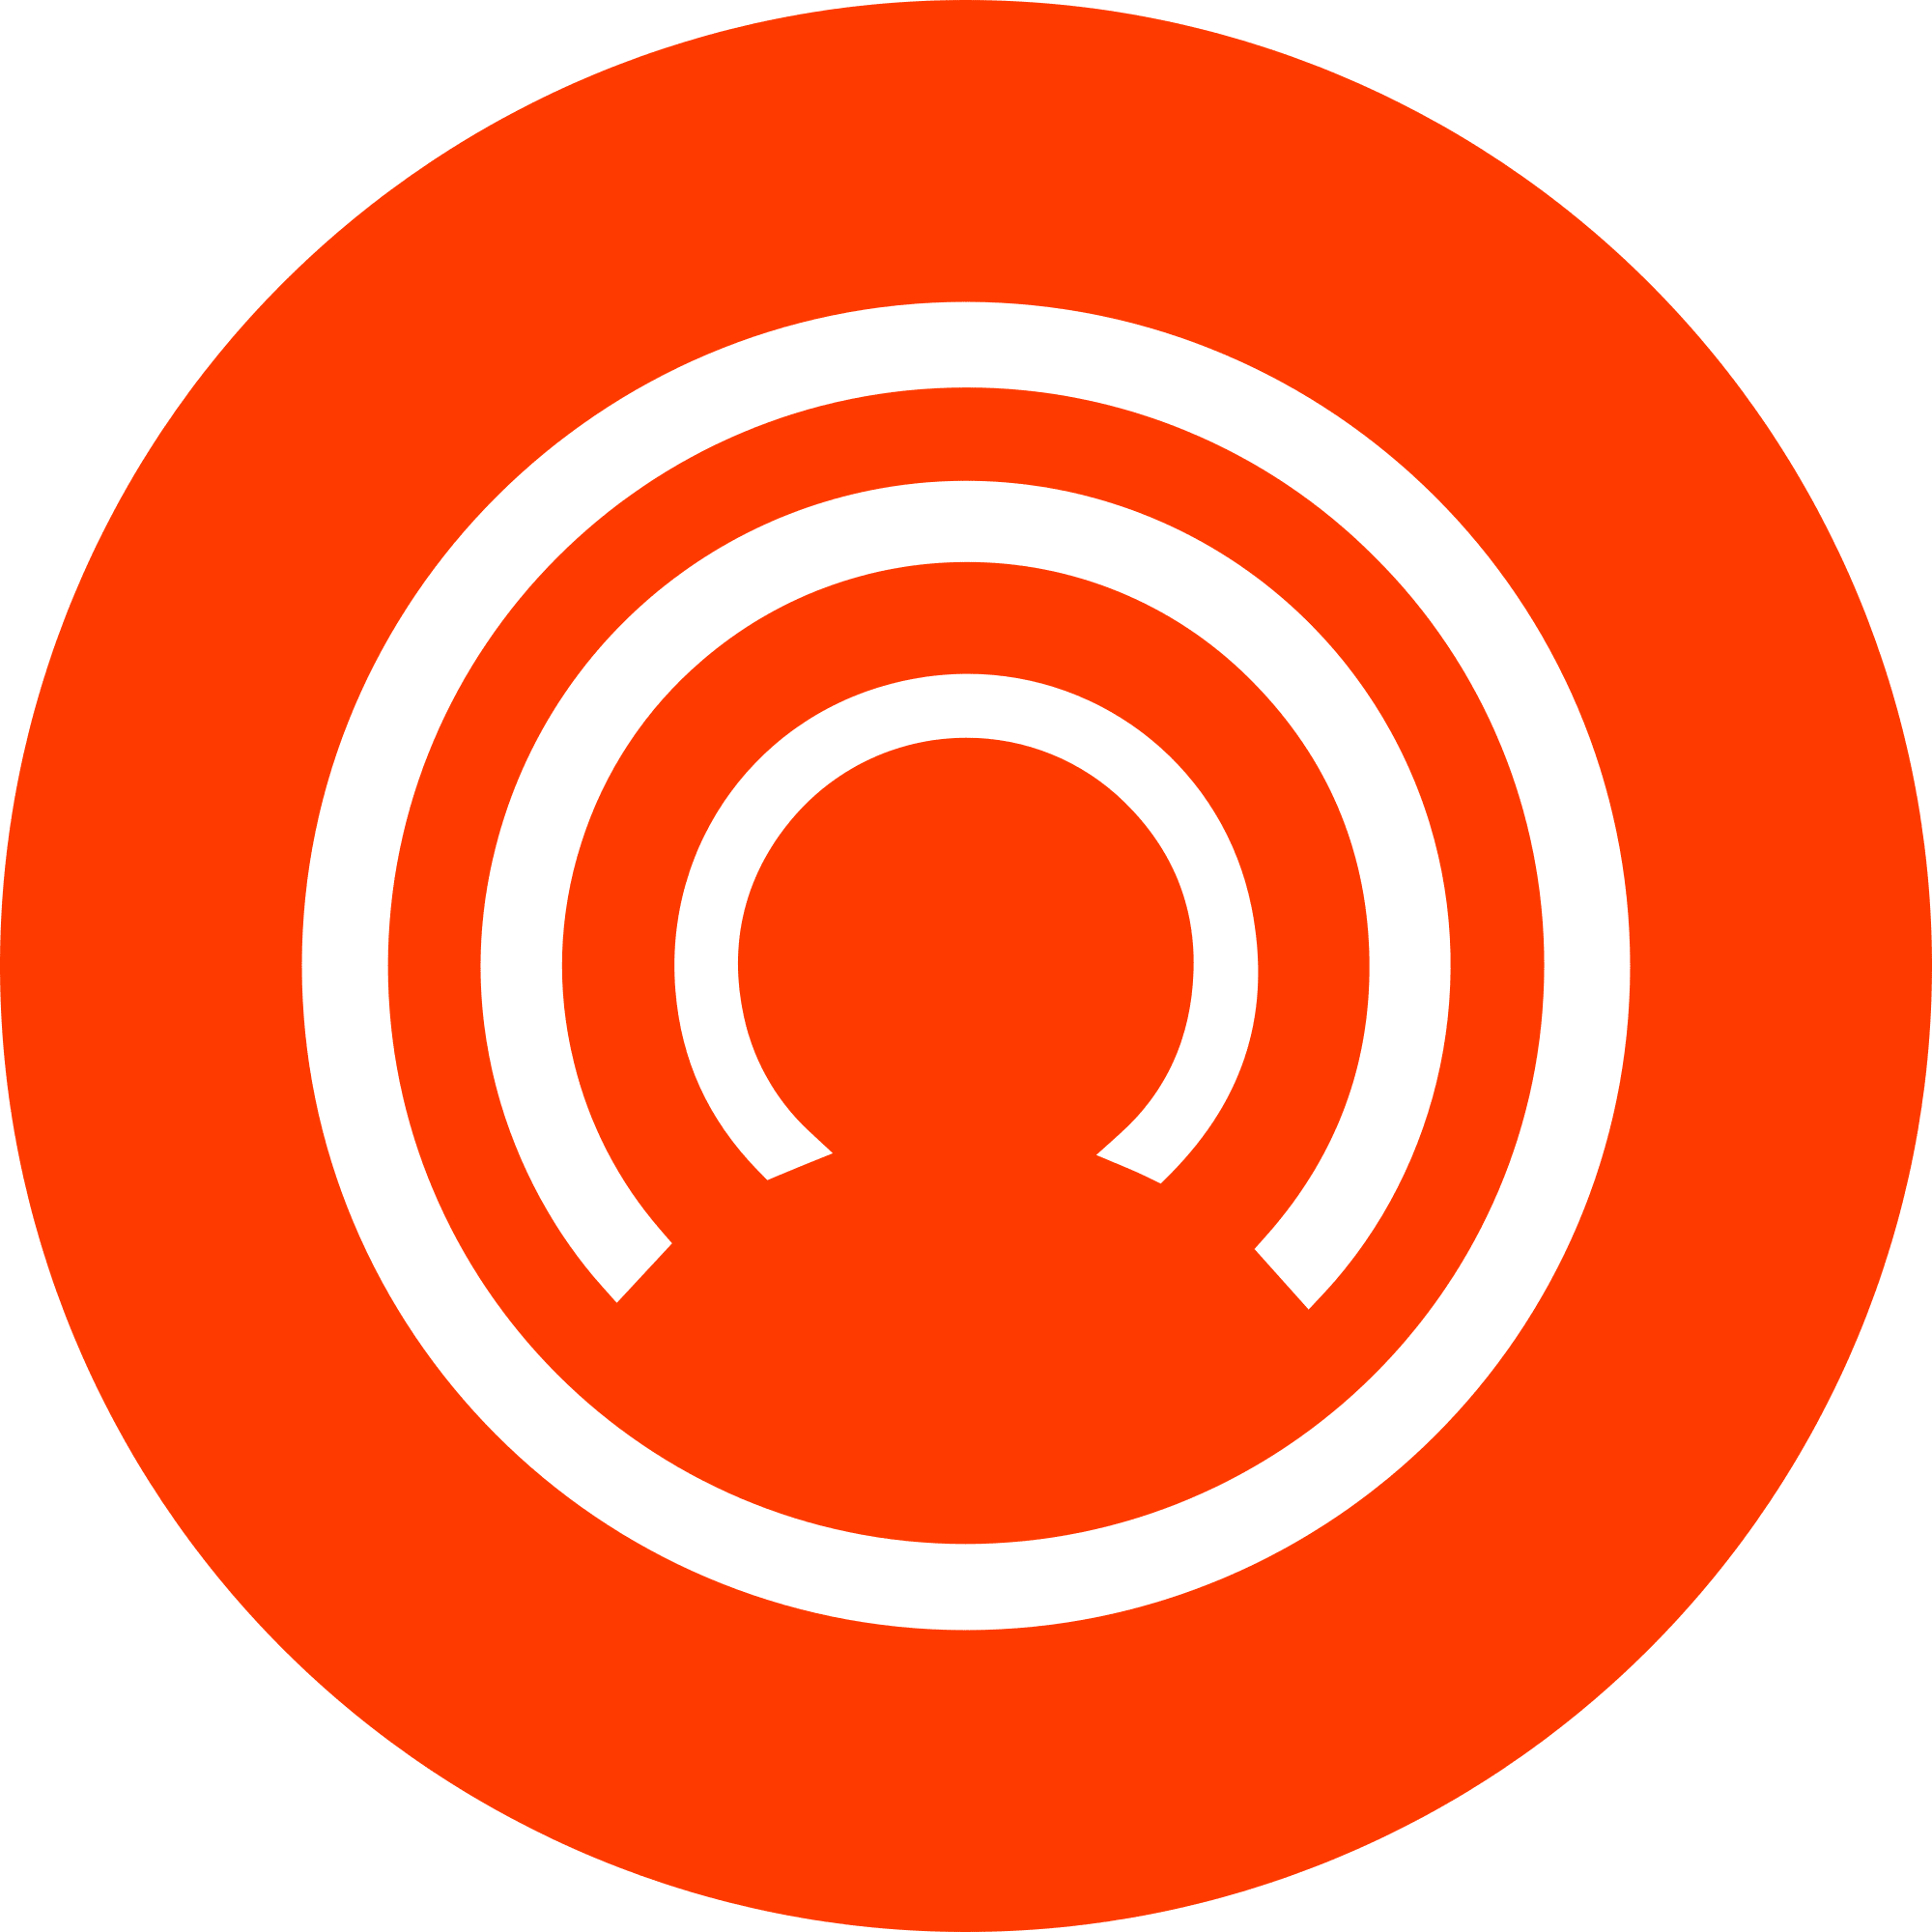 CloakCoin (CLOAK) logo